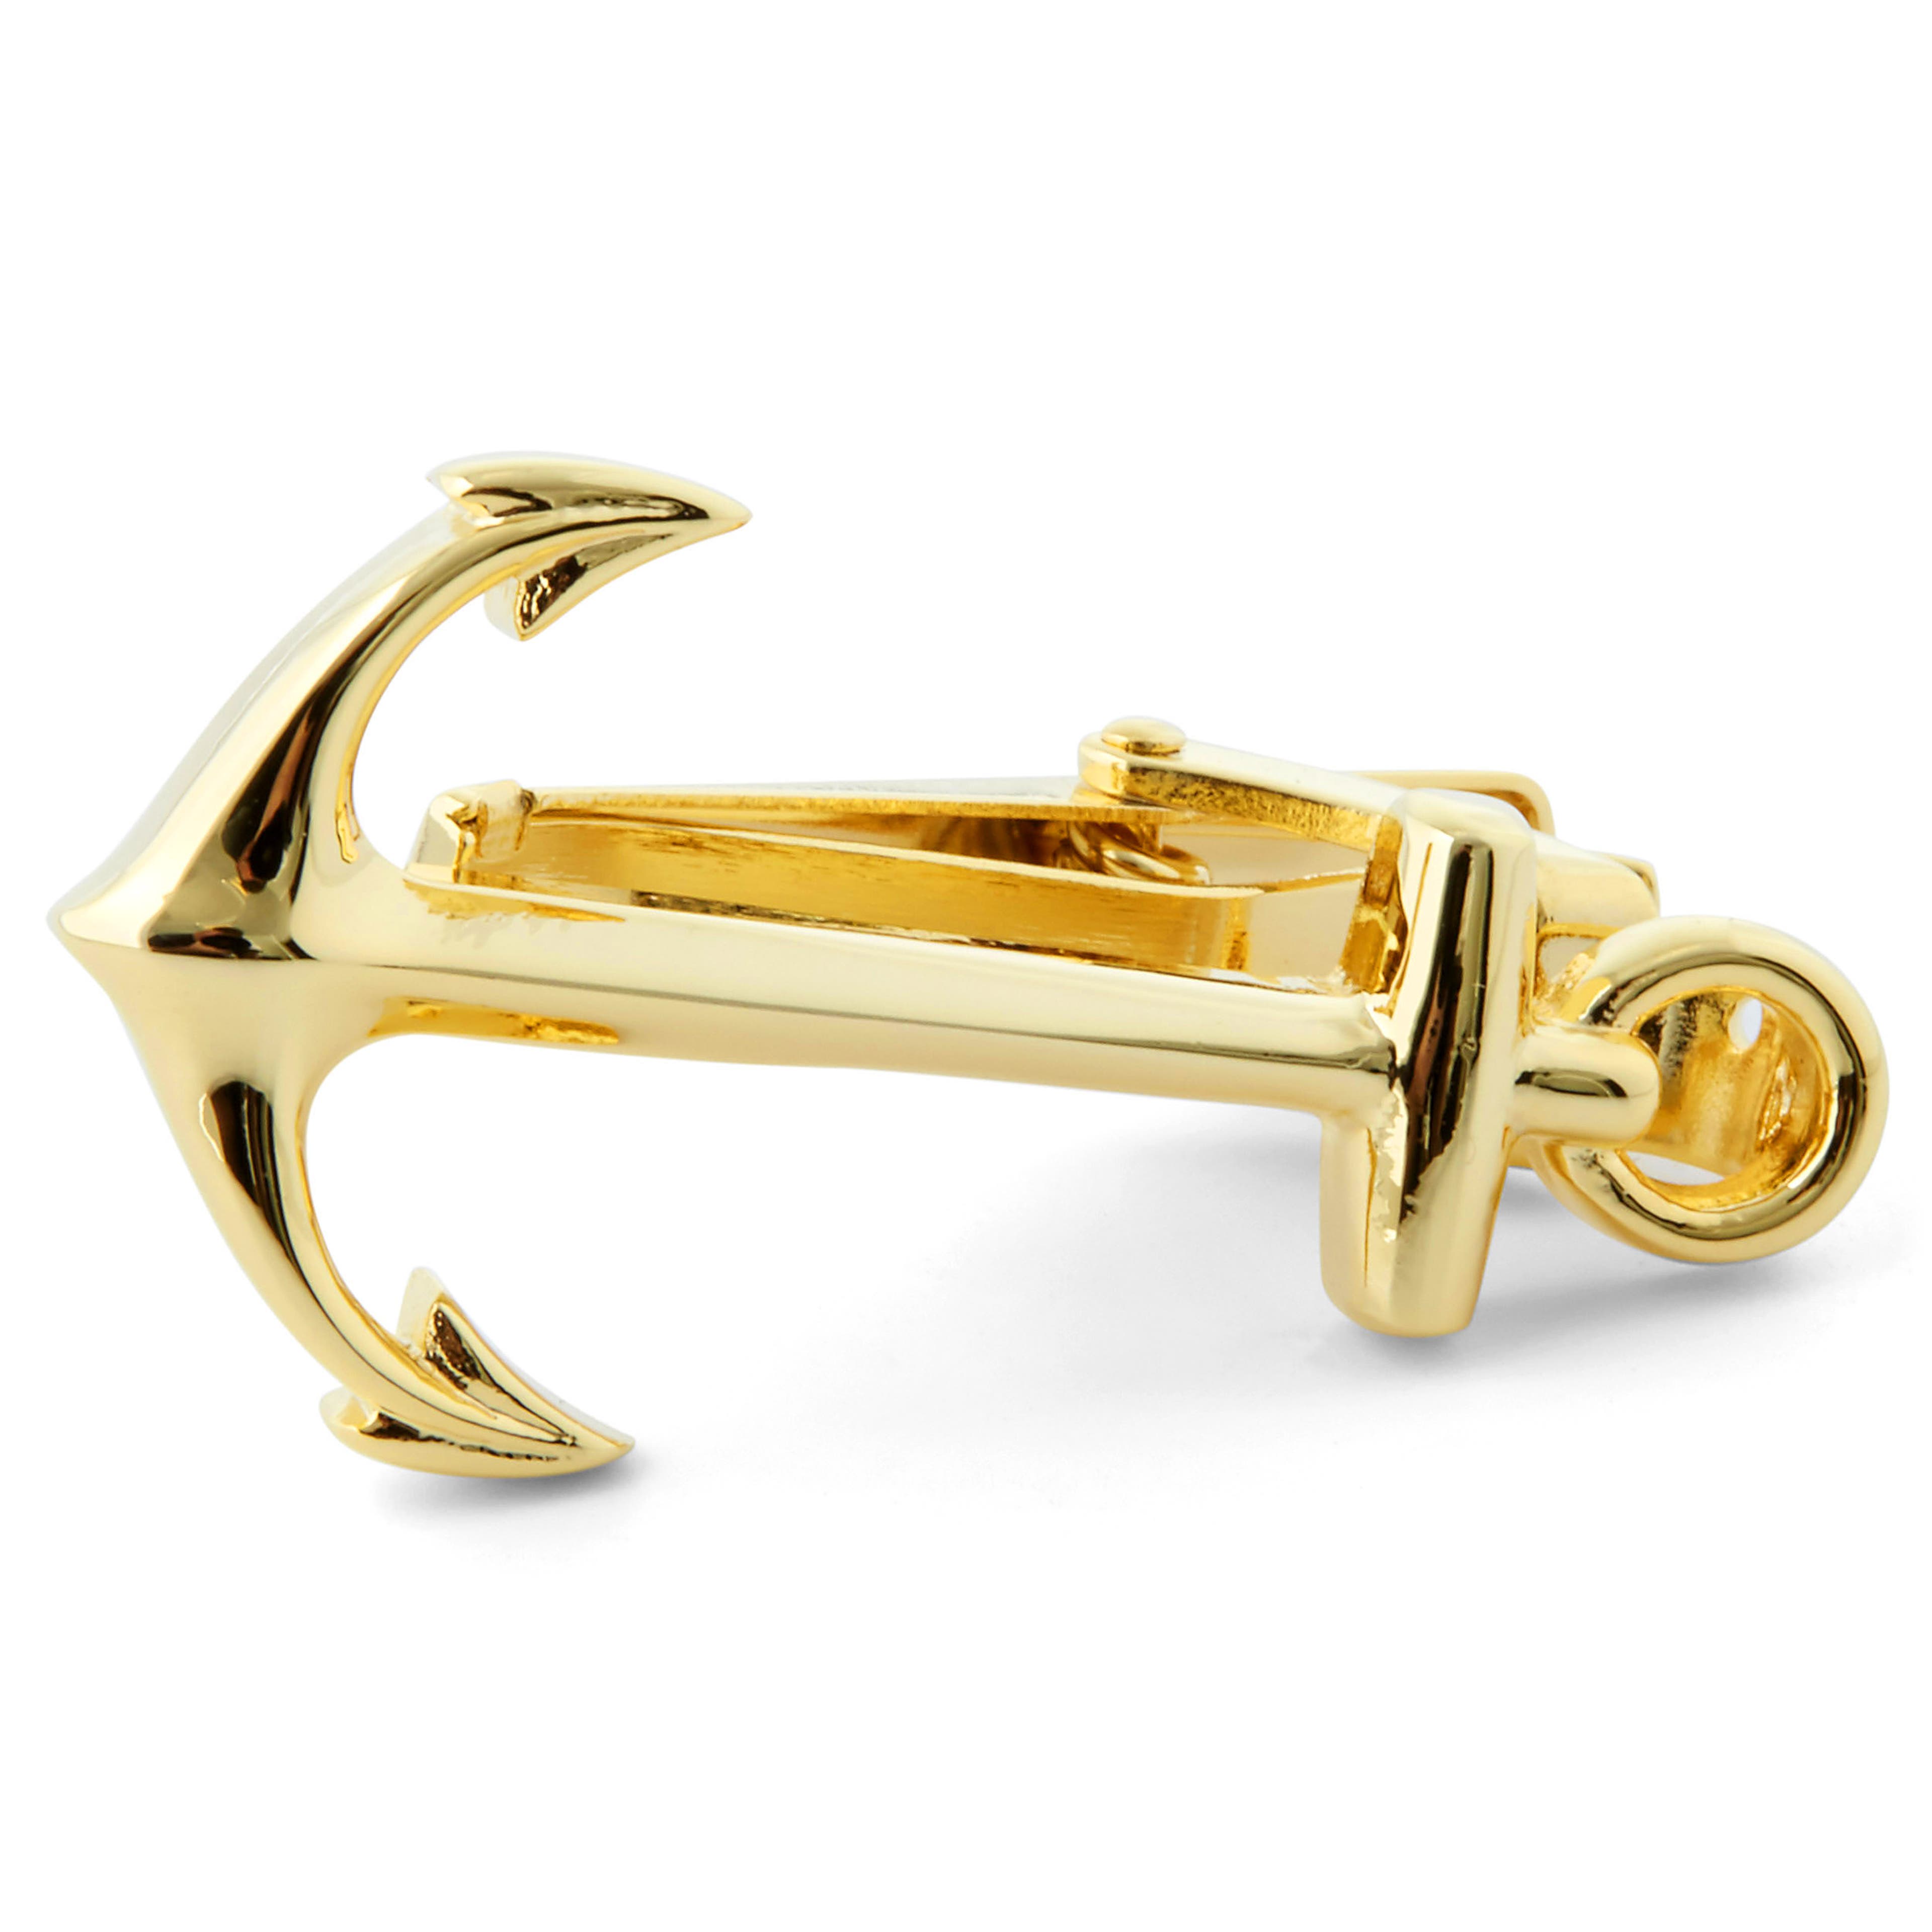 Gold-Tone Anchor Tie Clip